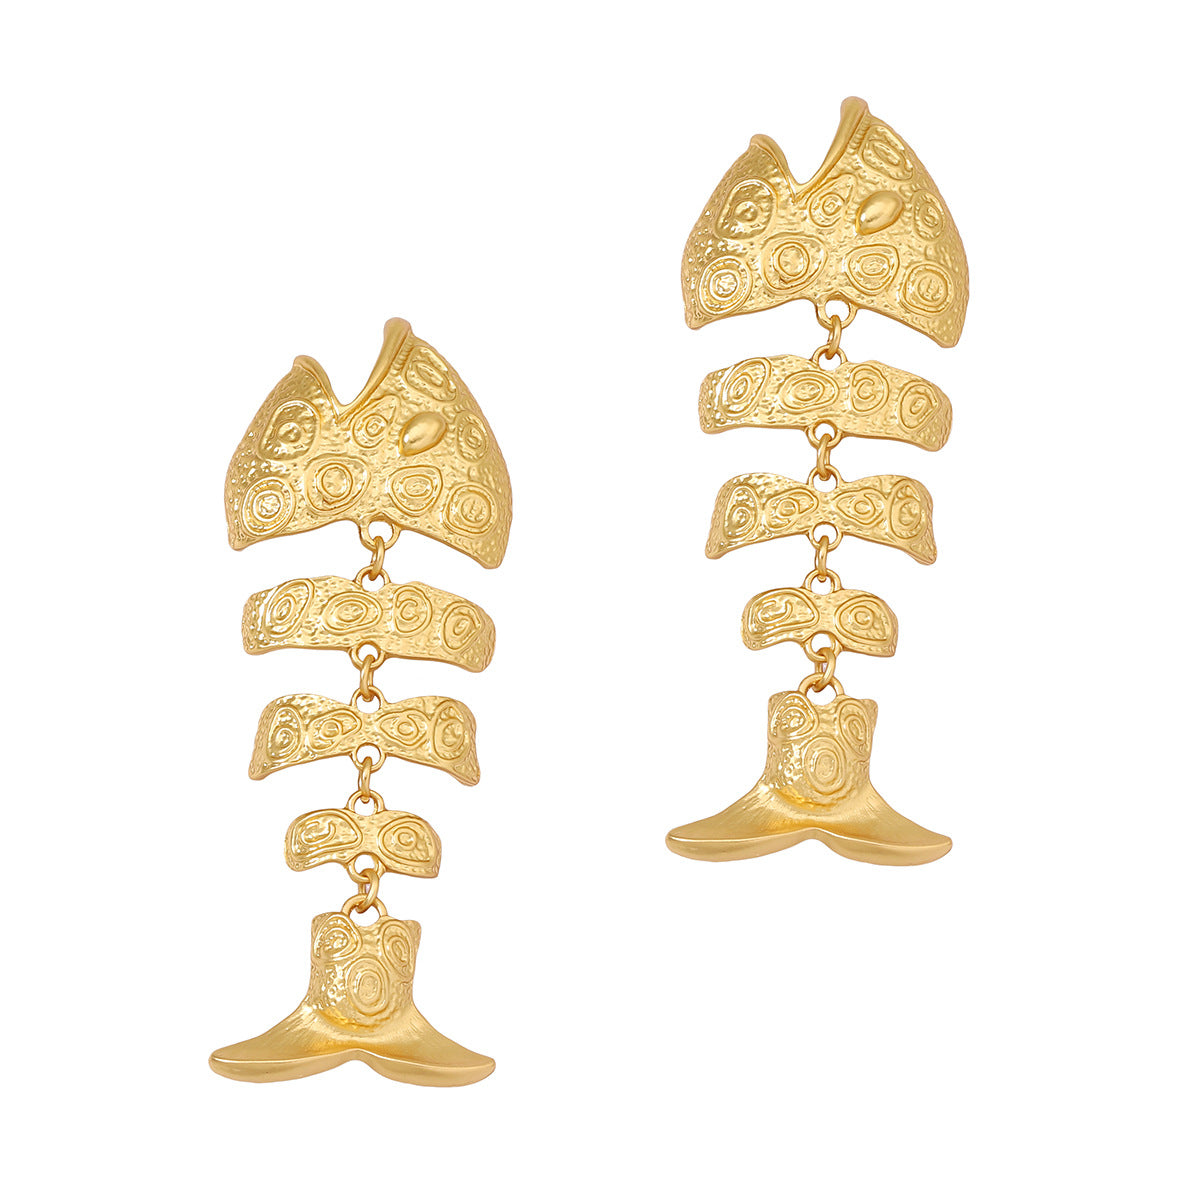 Retro Golden Hollow Fishbone Eardrops Earrings